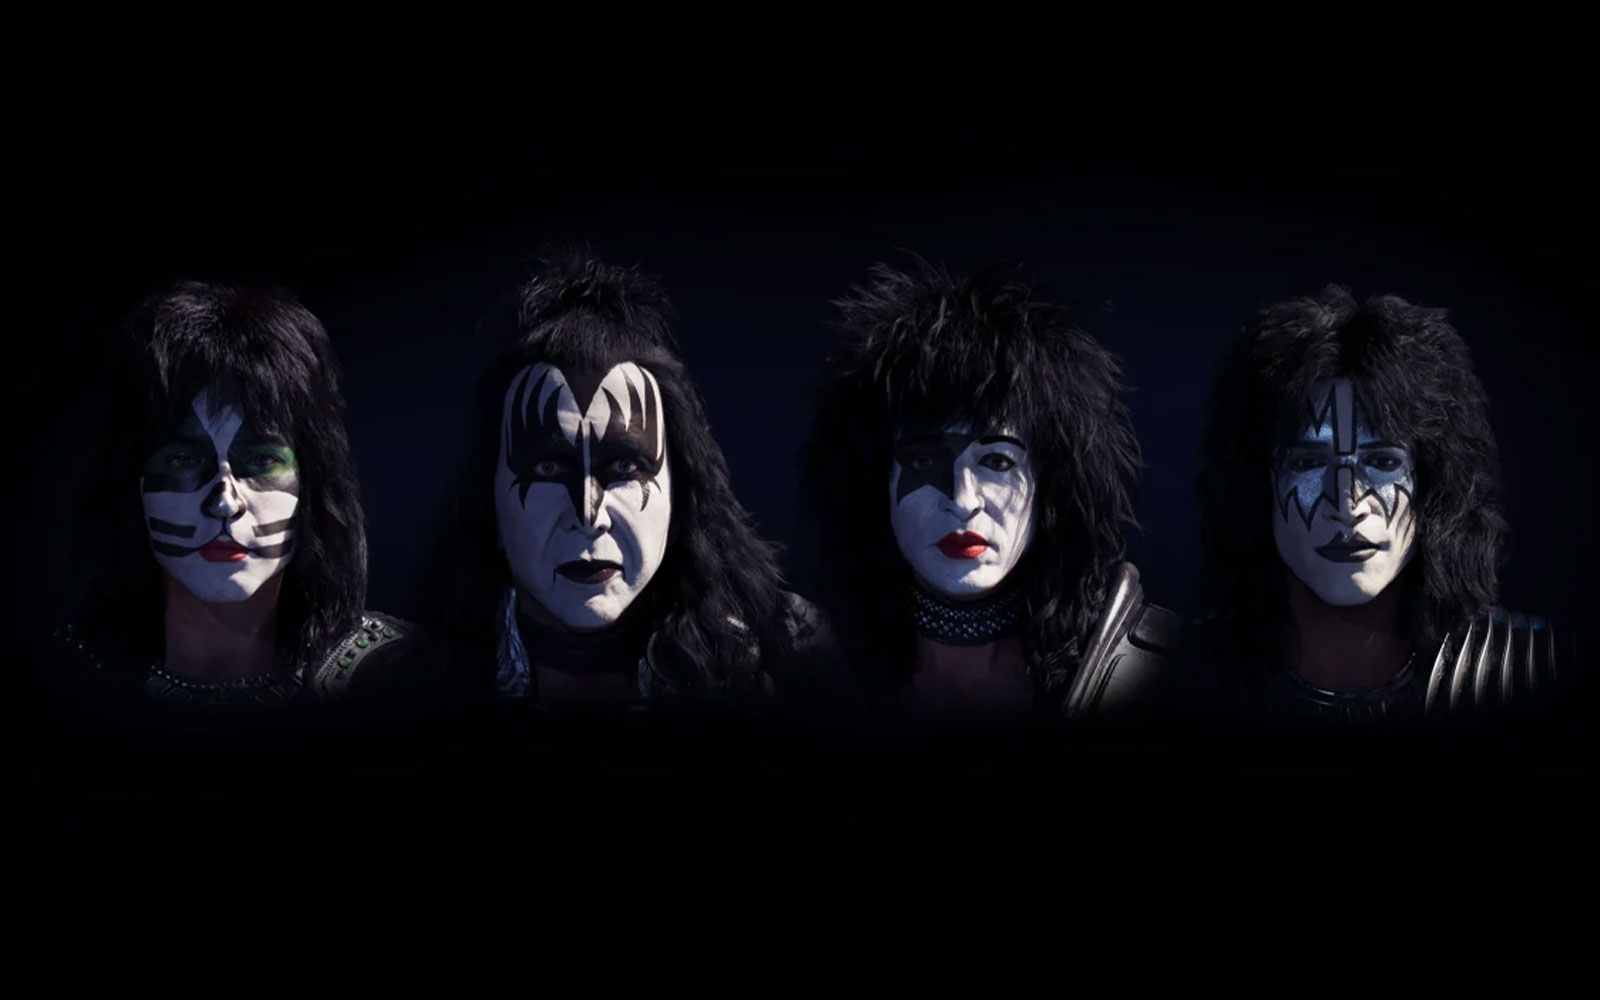 Легендарная рок-группа KISS обрела бессмертие, «переродившись» в цифровые аватары